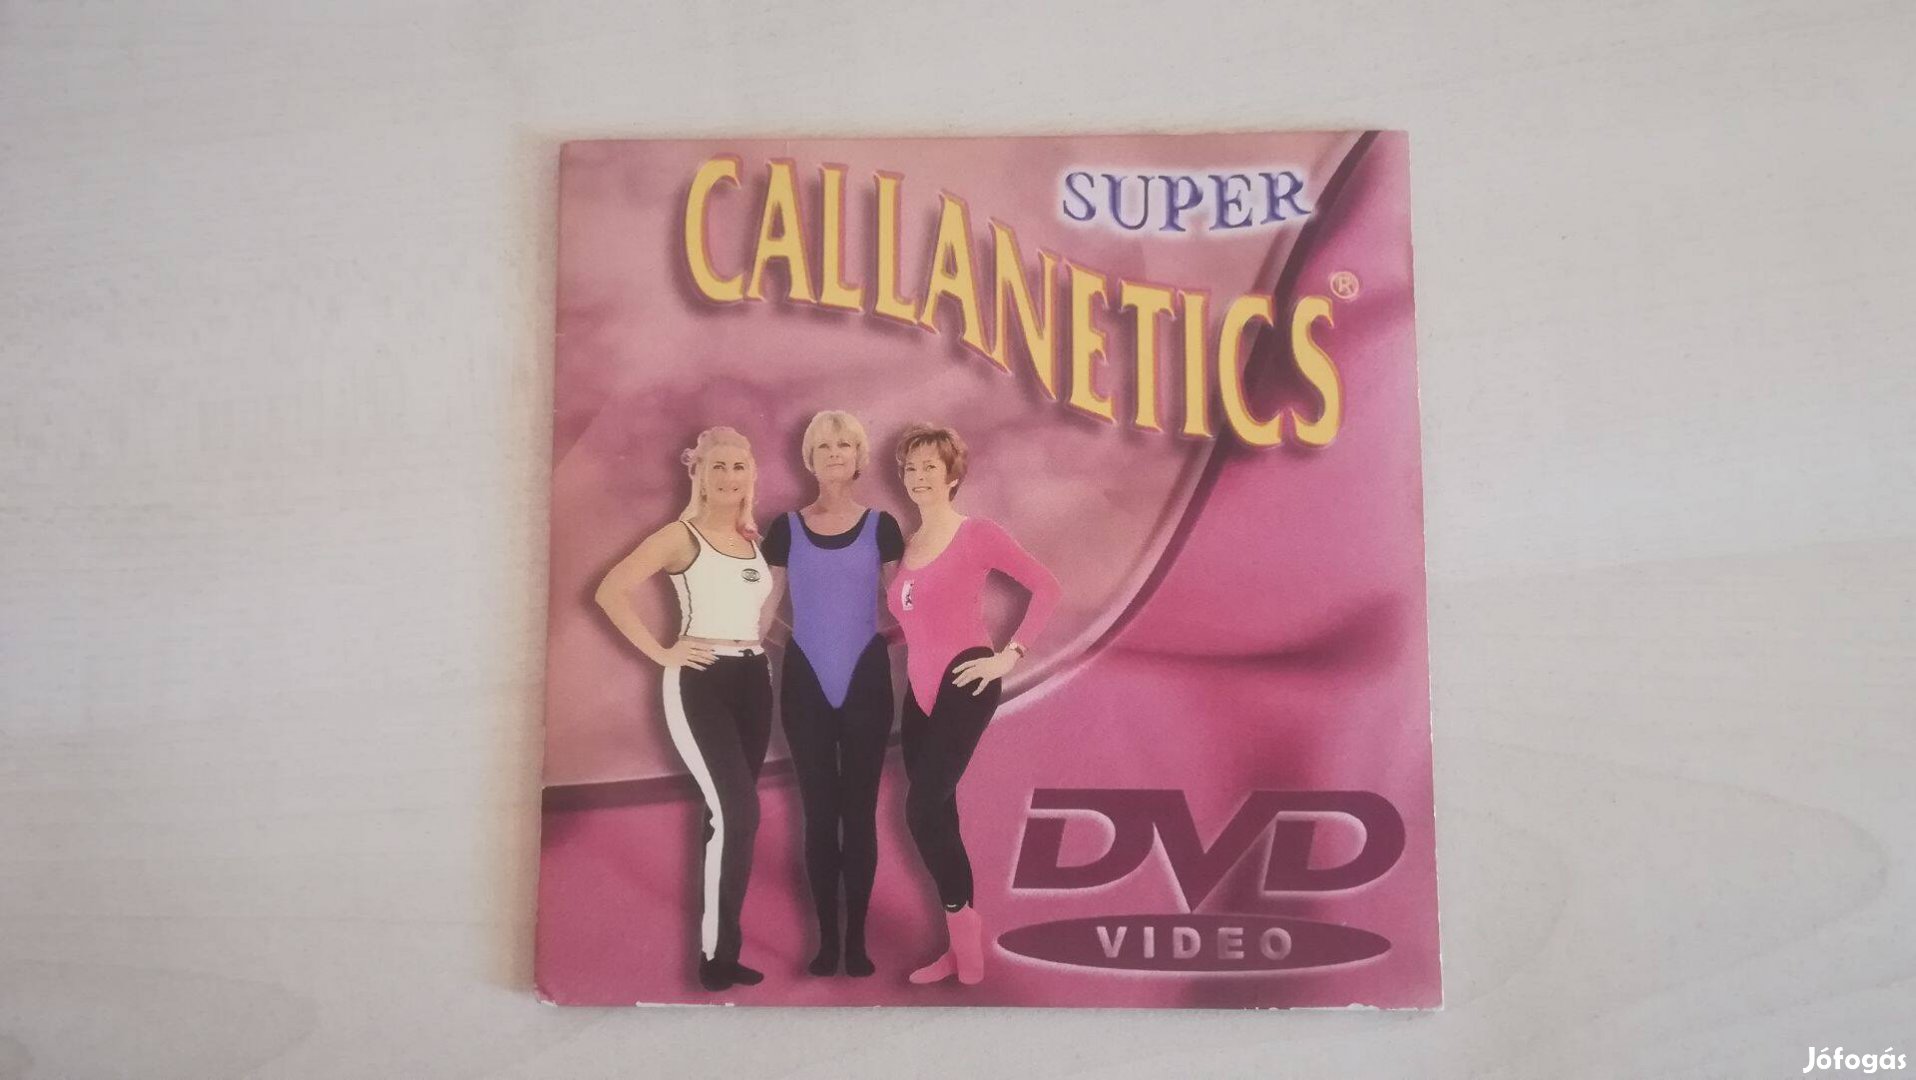 Super callanetics - retro fitness DVD